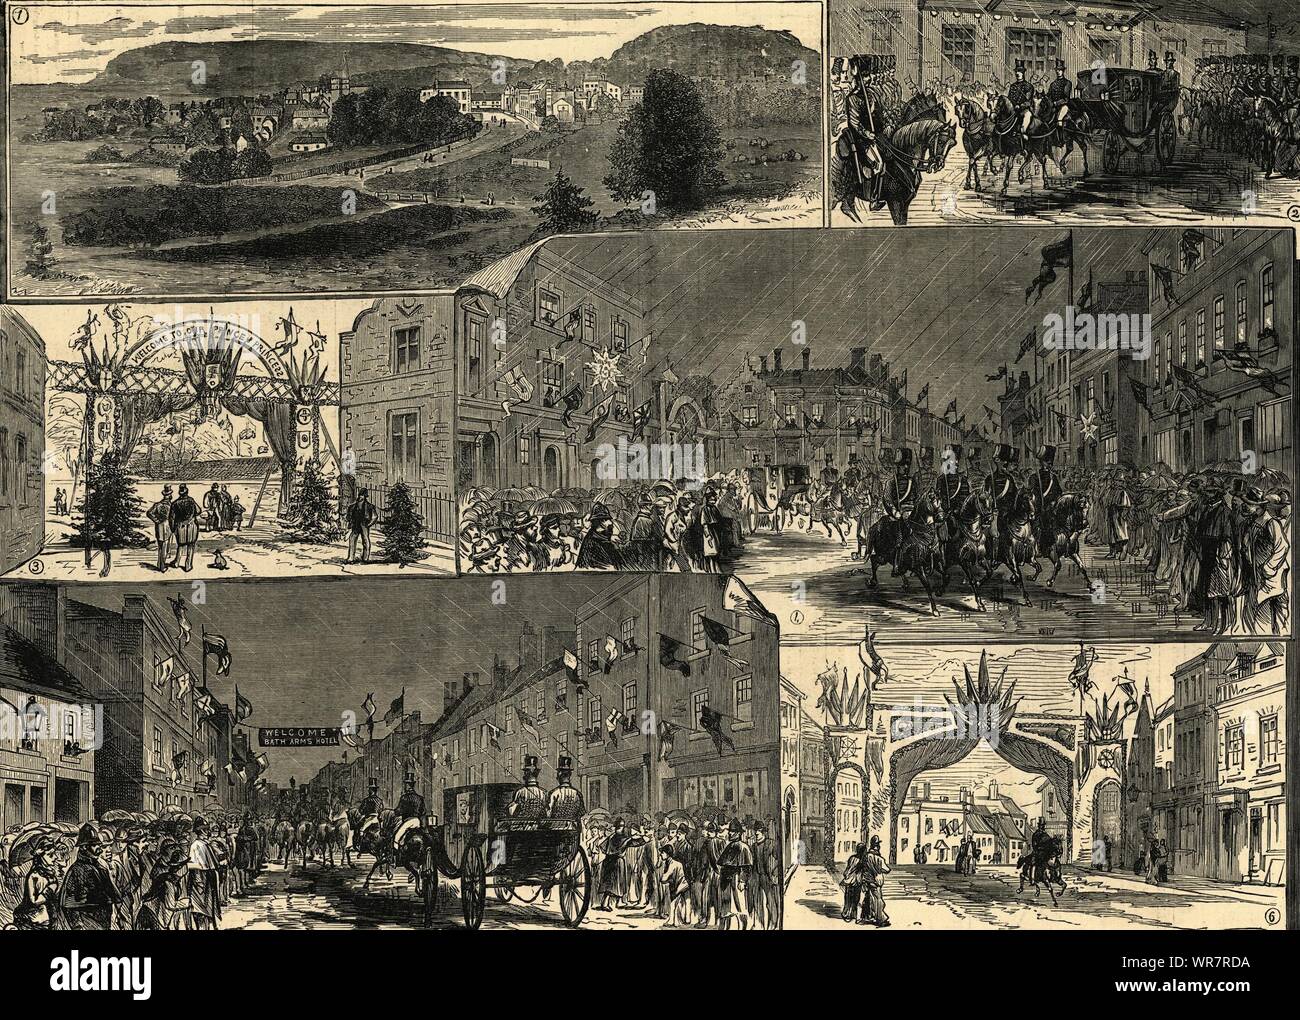 Warminster views: Royal Party im Bahnhof. Markt - Platz. Wiltshire 1881 Stockfoto